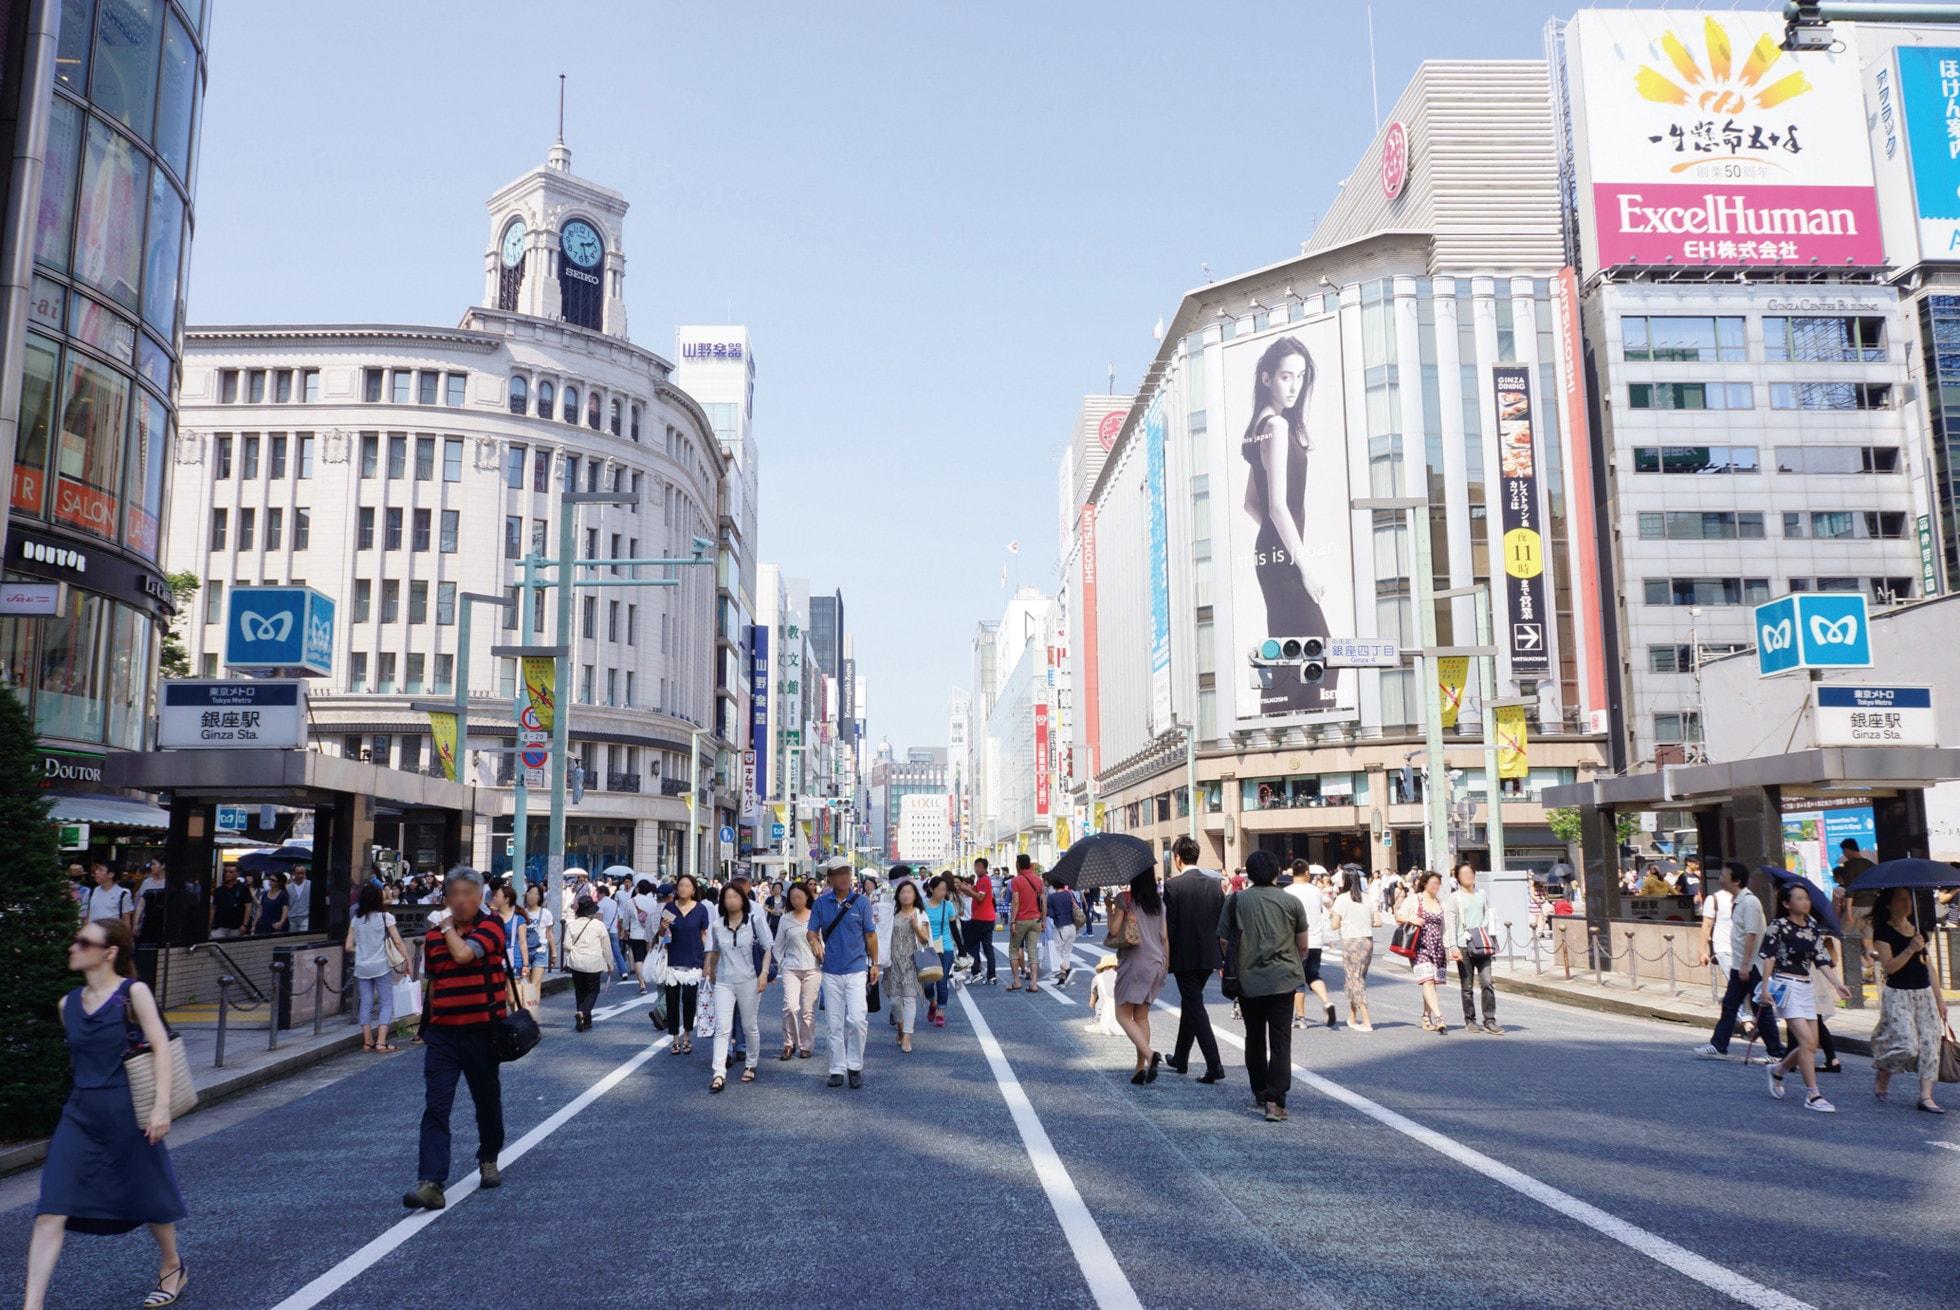 イメージから捉える東京メトロエリアの多様な顔とは ～東京の街のイメージ調査～ 